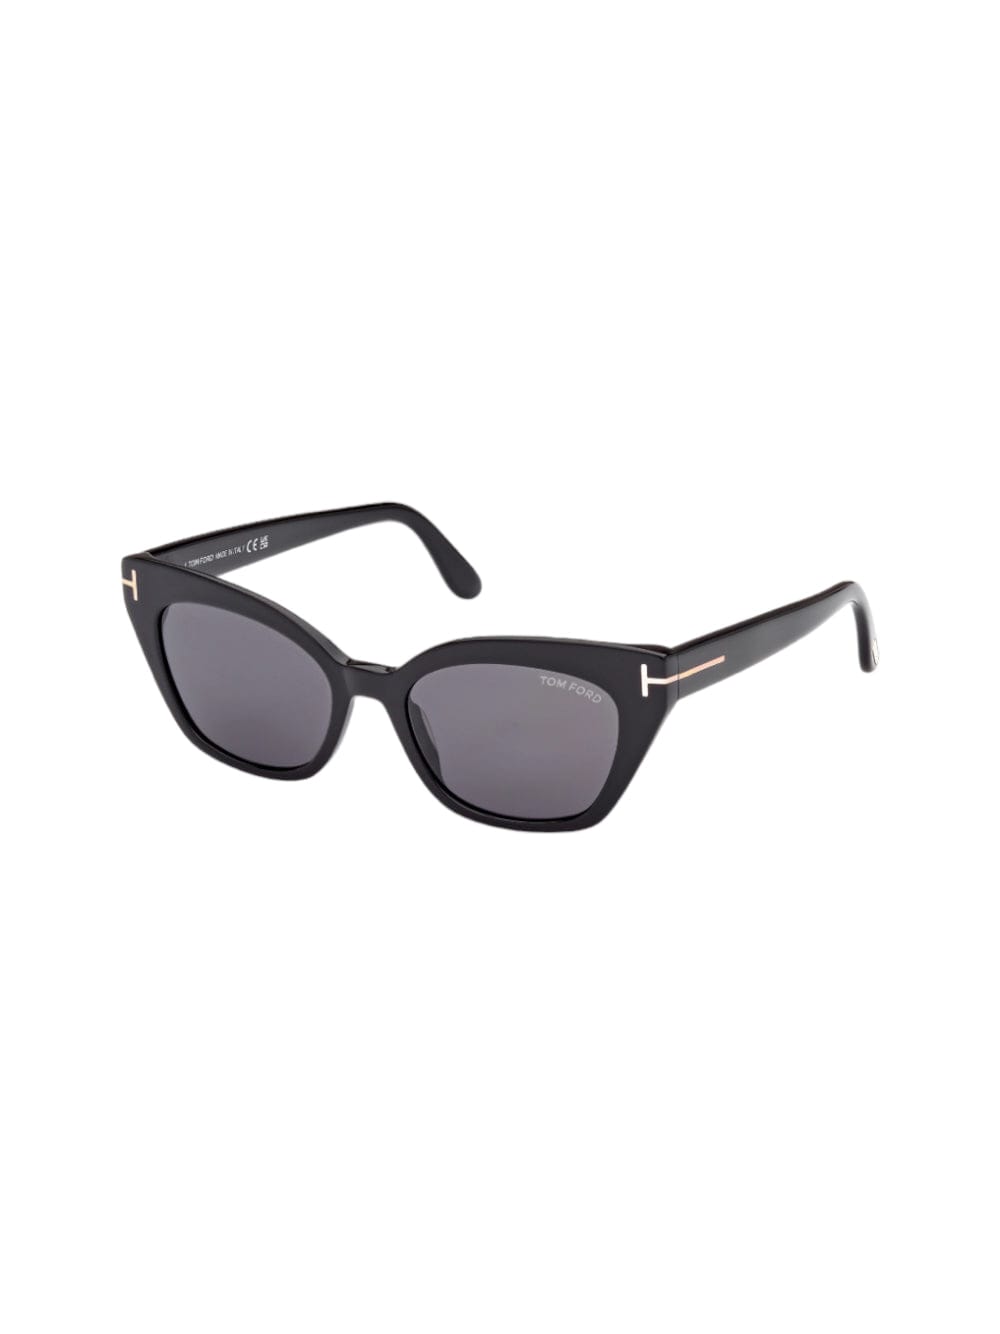 Ft 1031 /s Sunglasses